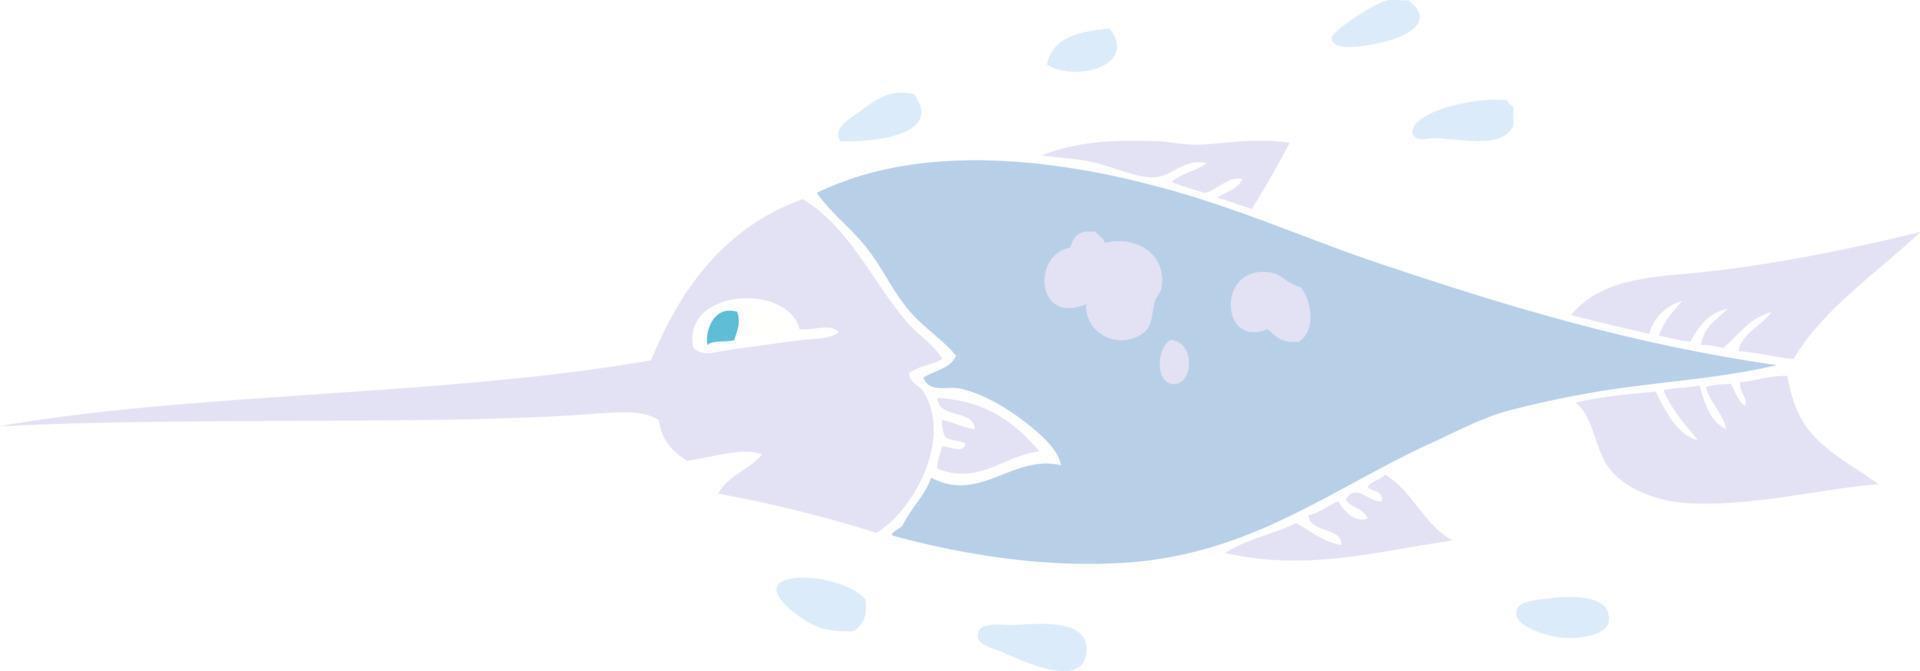 vlak kleur illustratie van zwaardvis vector